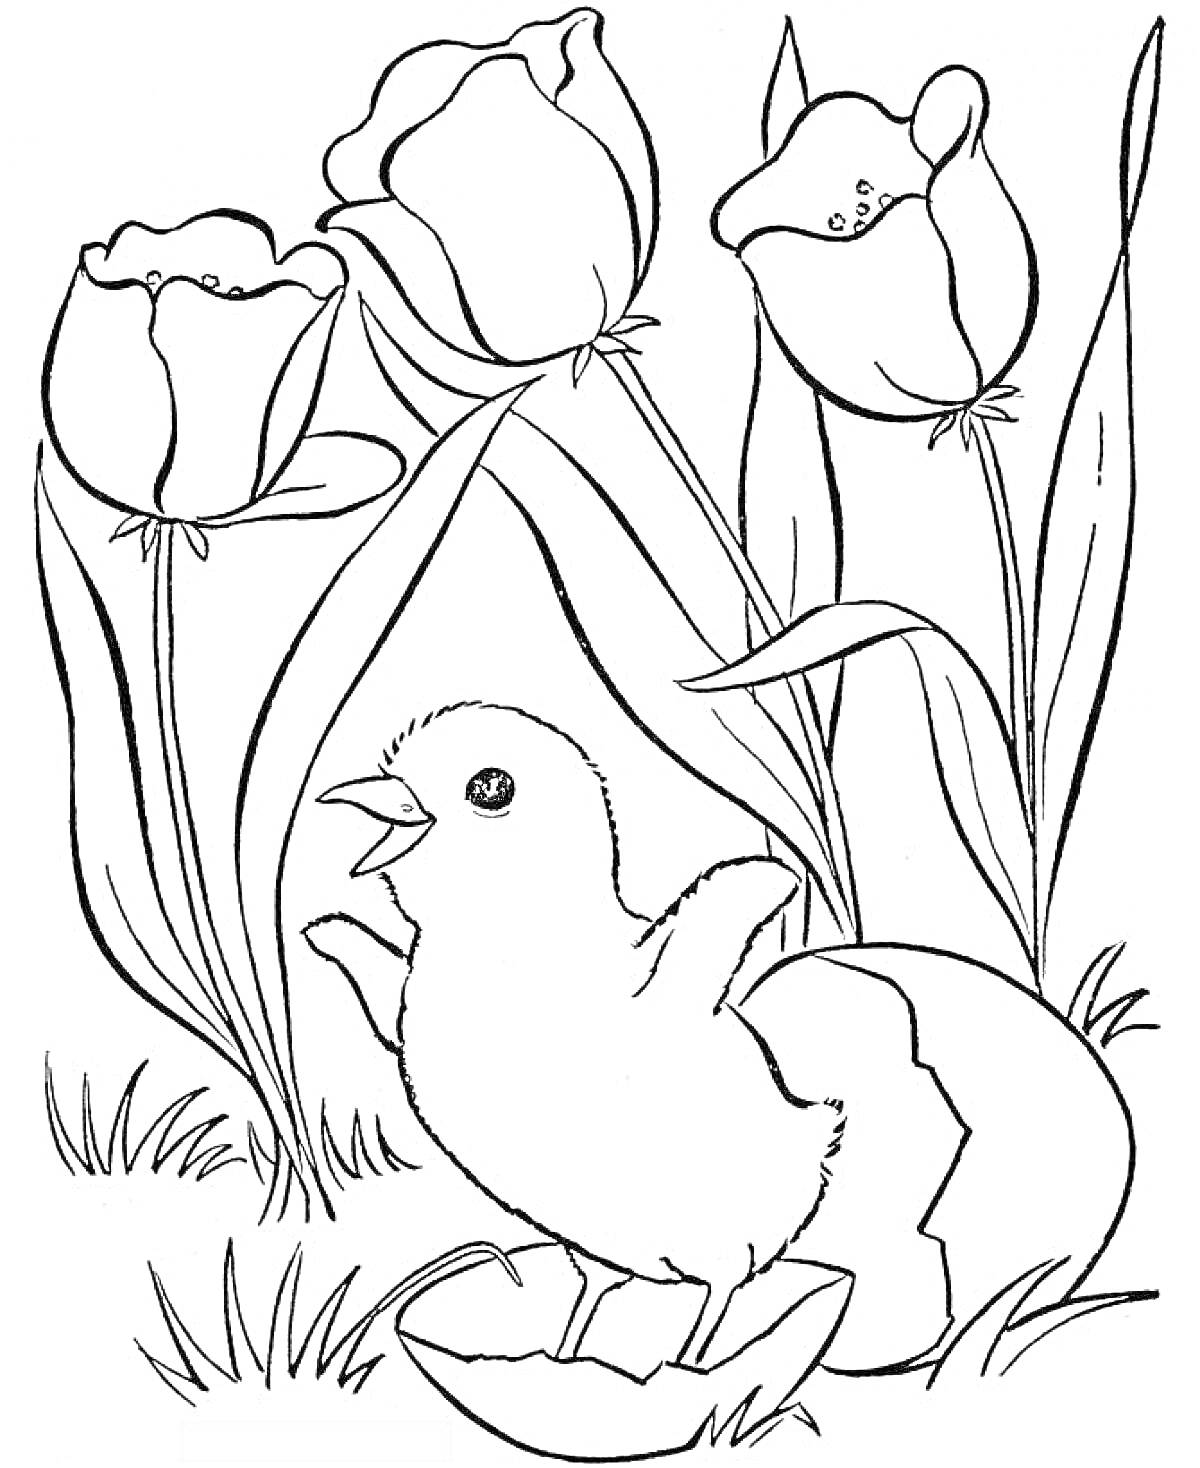 Раскраска Цыплёнок среди цветов тюльпанов и травы, вылупившийся из яйца